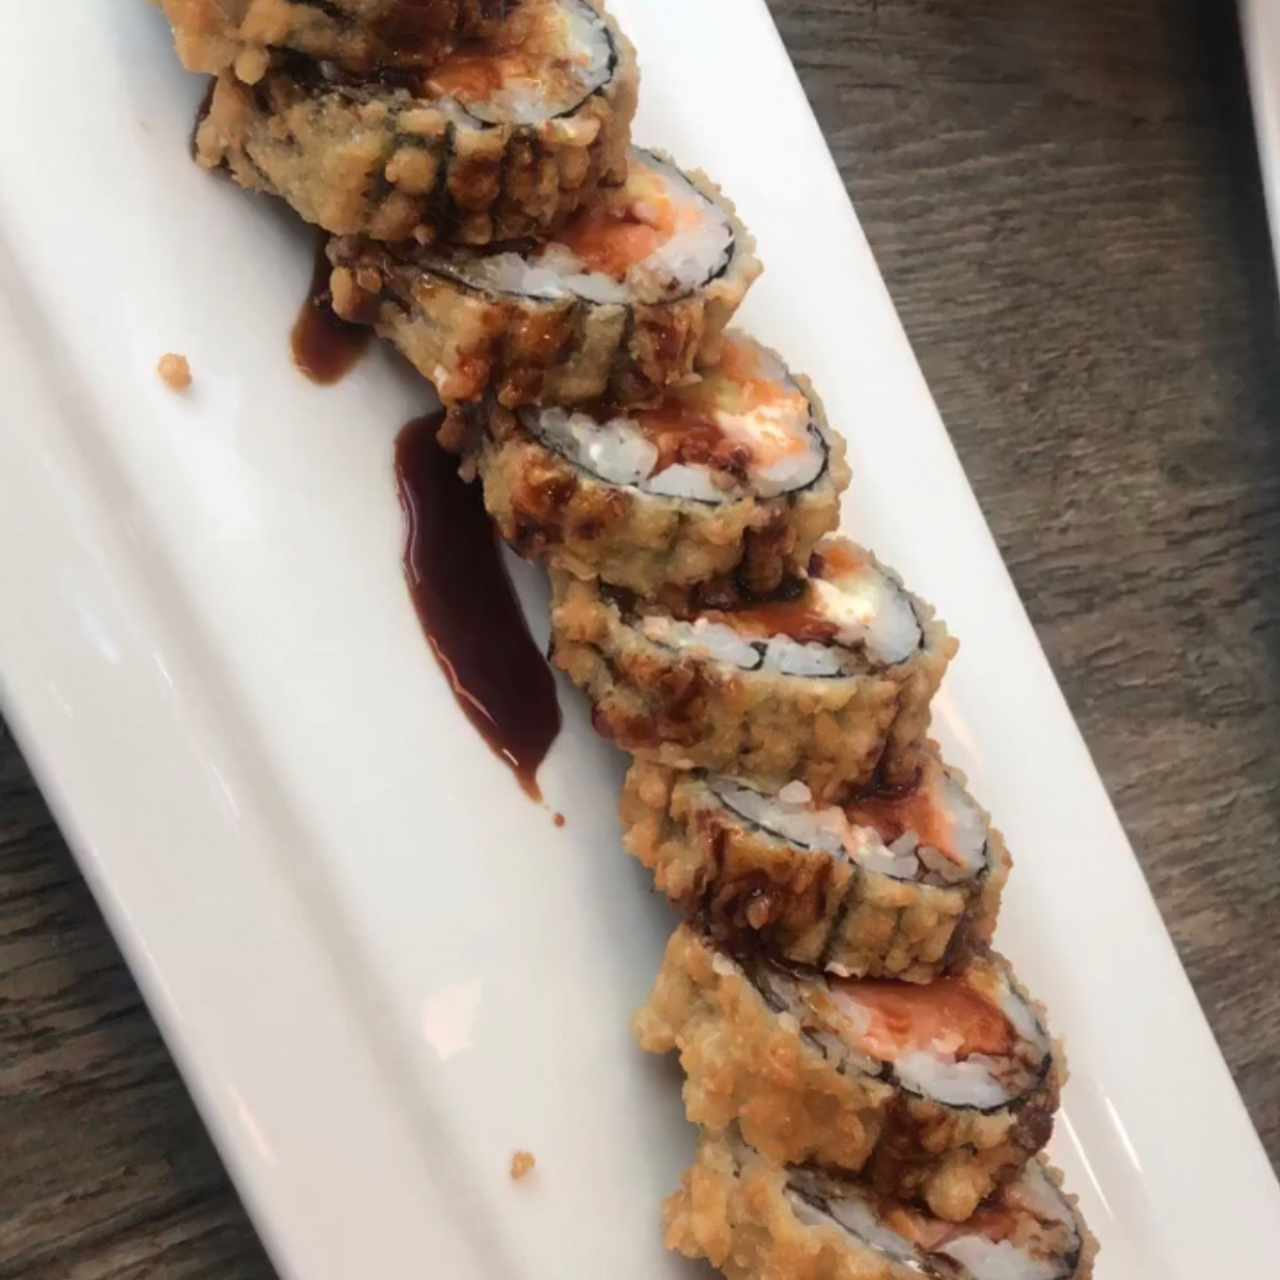 tataki tempura